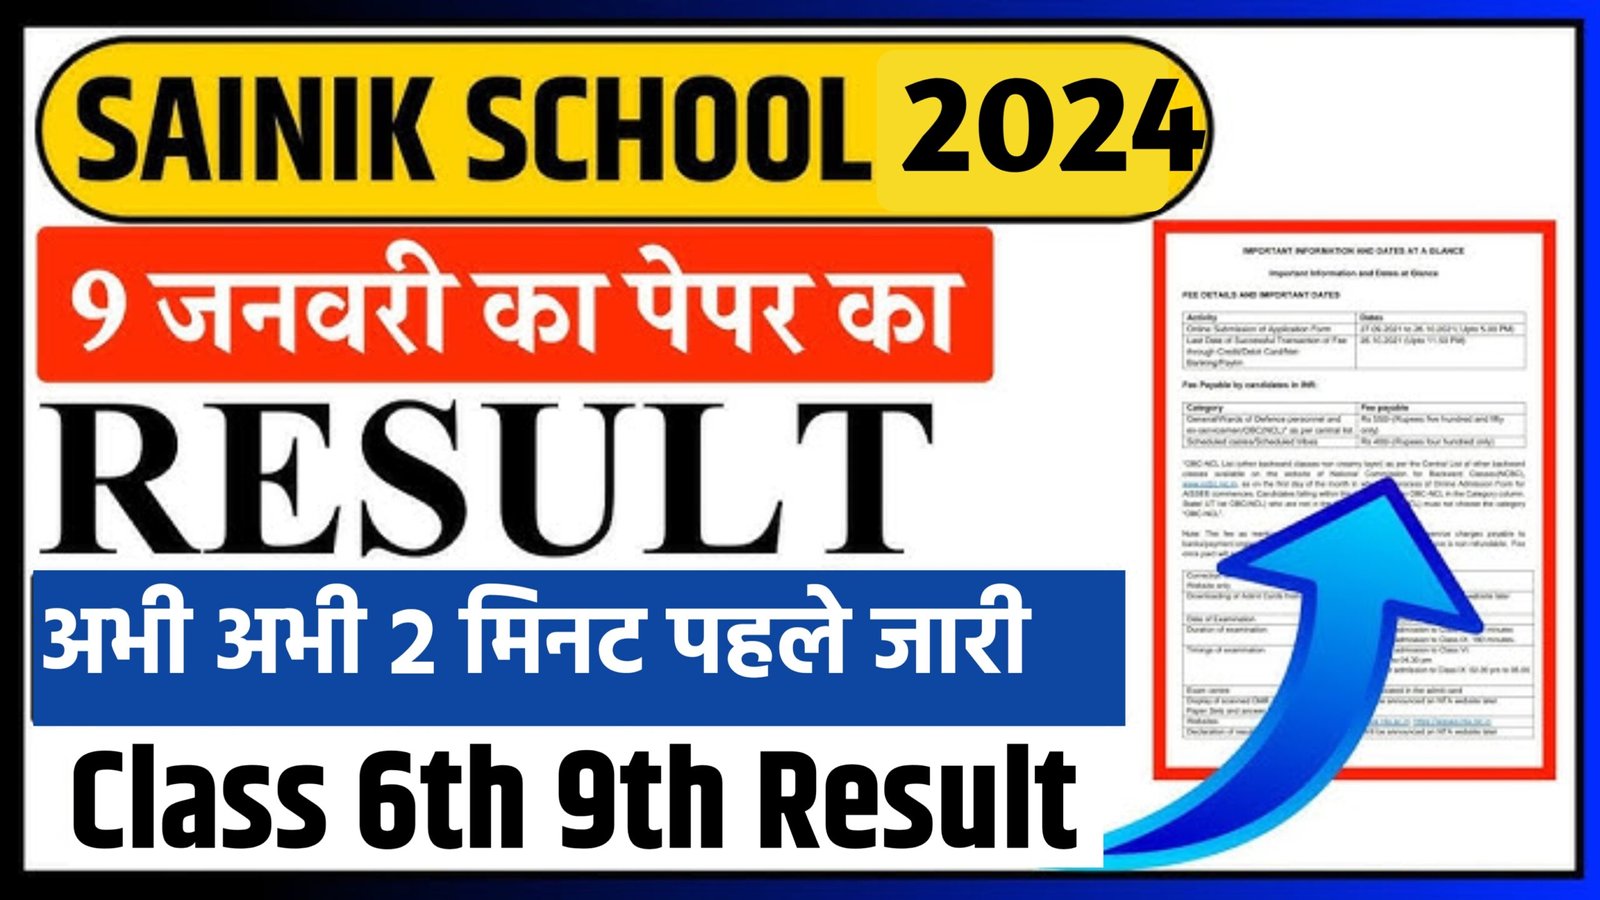 Sainik School Result 2024